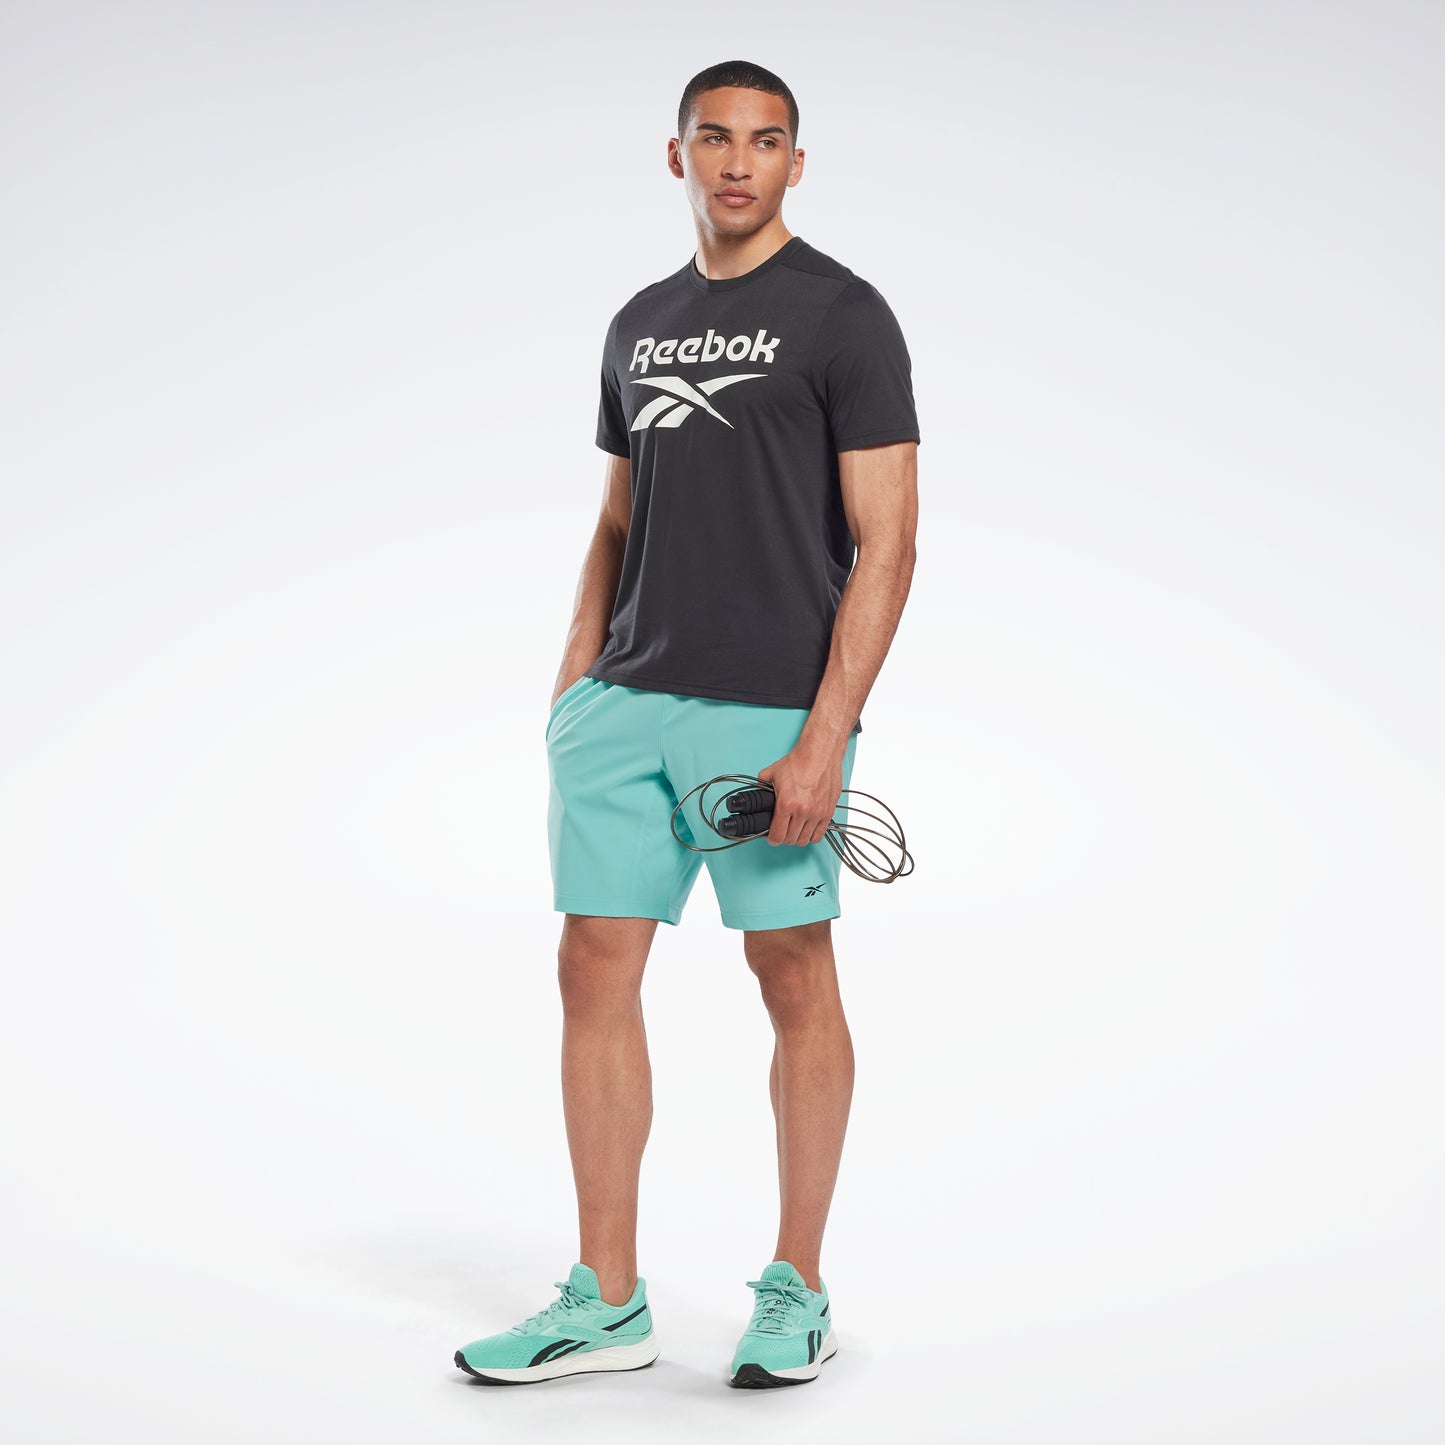 $39.99 Training Shorts  Training shorts, Mens workout shorts